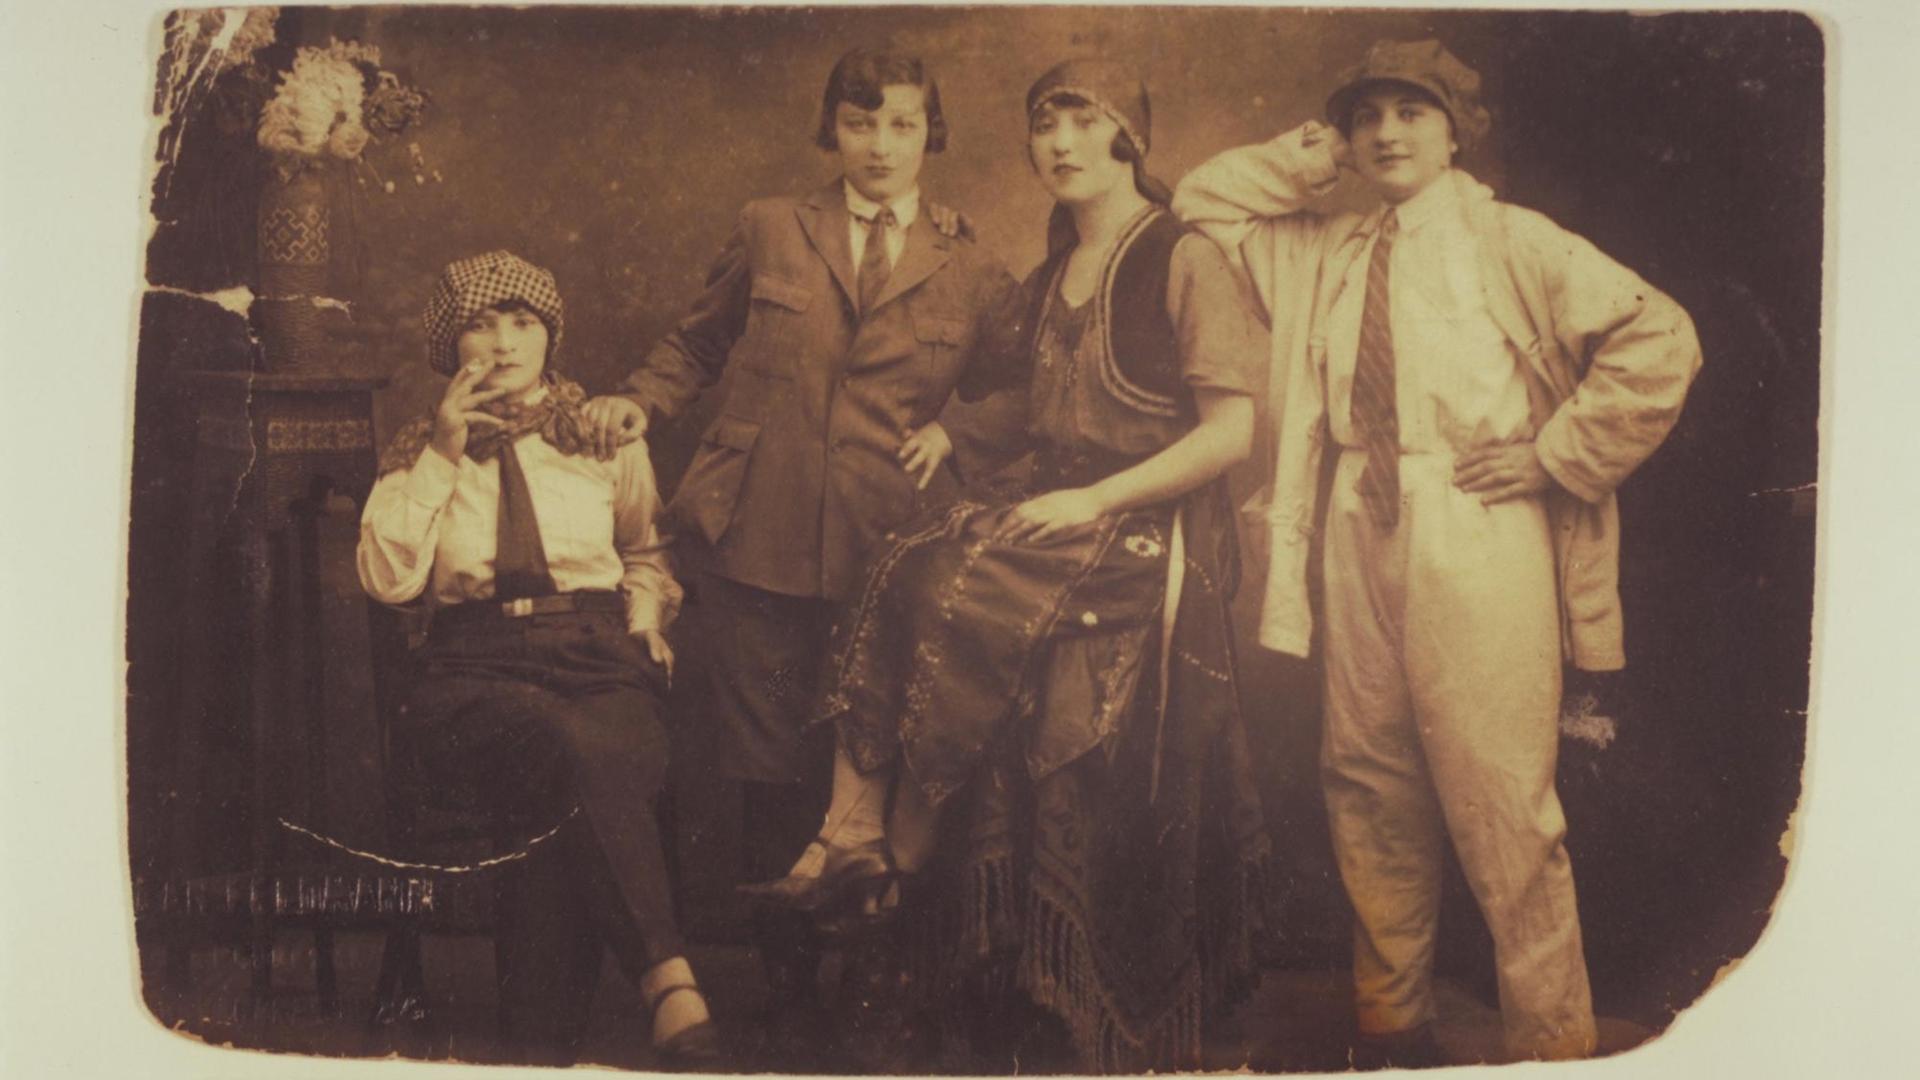 Spannende, teils unbekannte Geschichten von Frauen und der Frauenbewegung aufzubereiten und auffindbar zu machen, ist ein wichtiges Ziel des DDF und der i.d.a.-Einrichtungen, Symbolbild DDF, anonymes Gruppenbild, um 1920